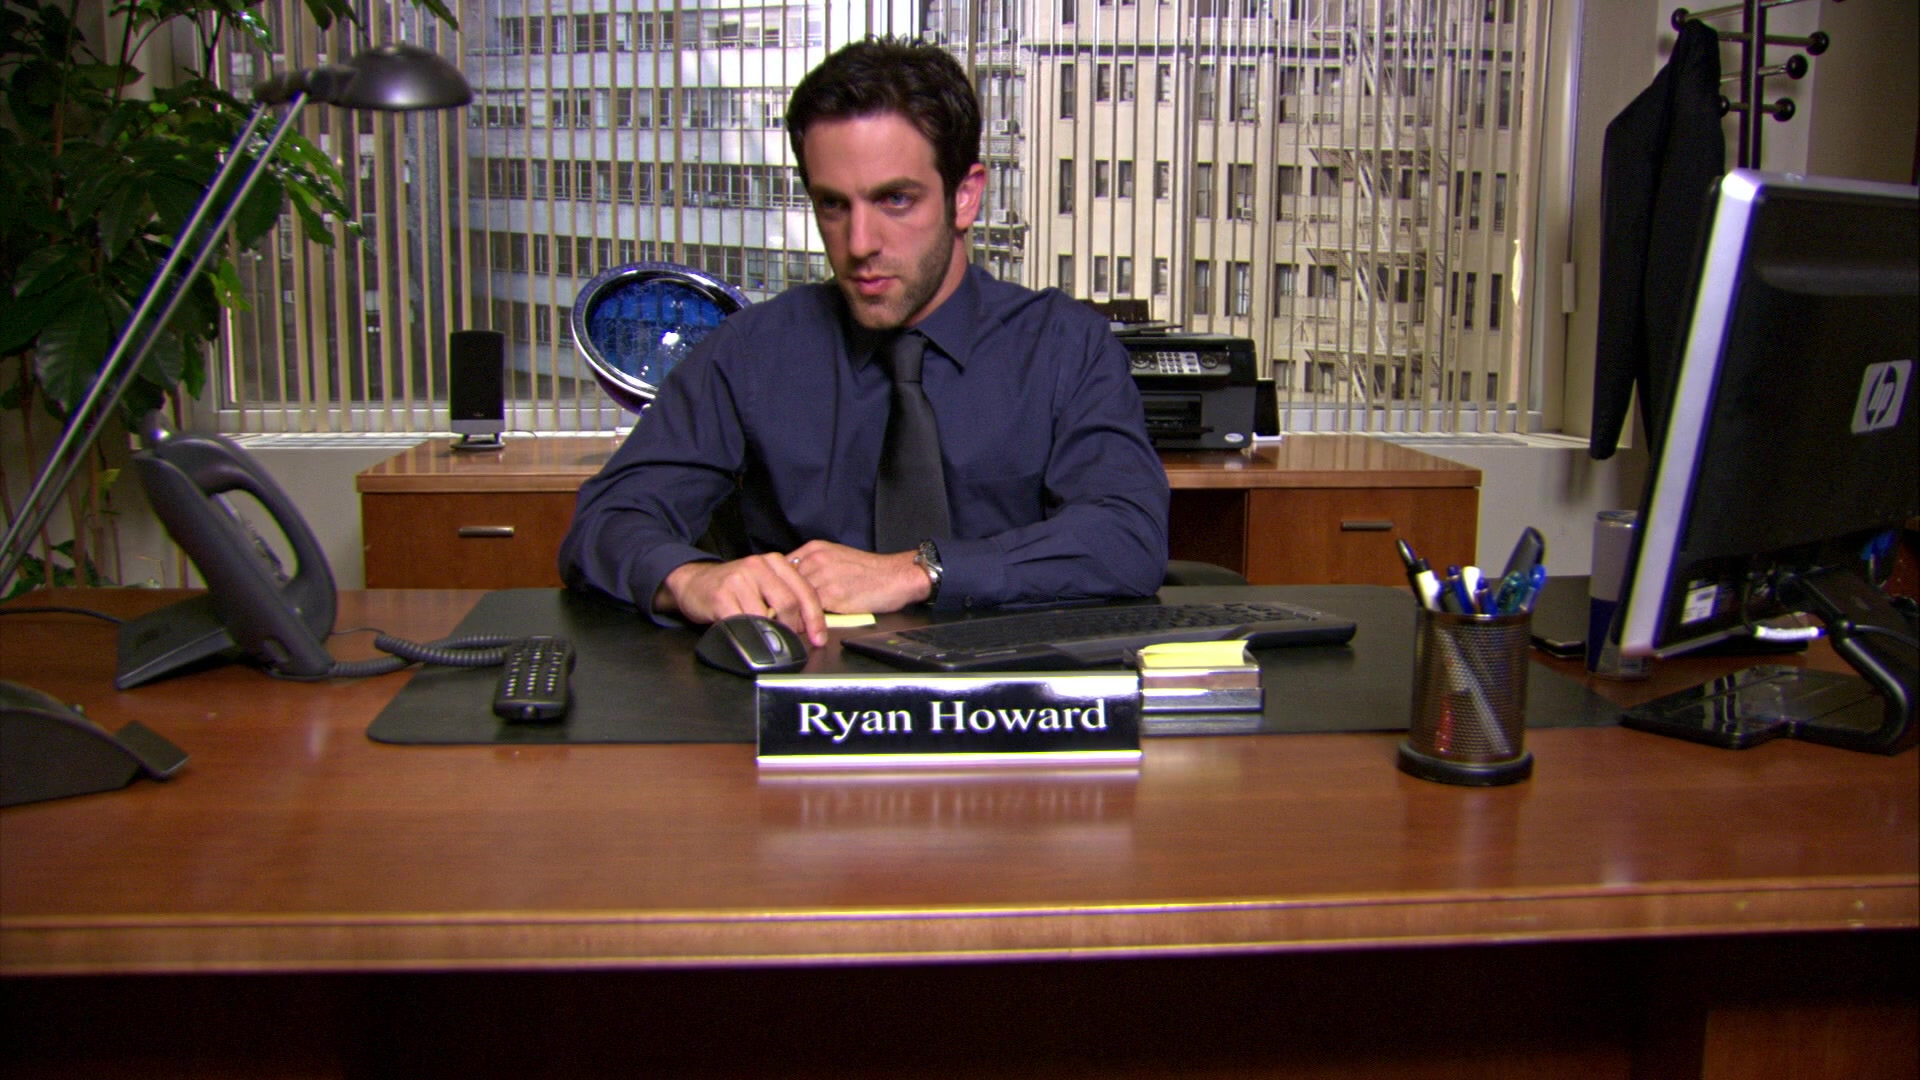 Ryan Howard vs. Ryan Howard — in honor of 'The Office's' series finale